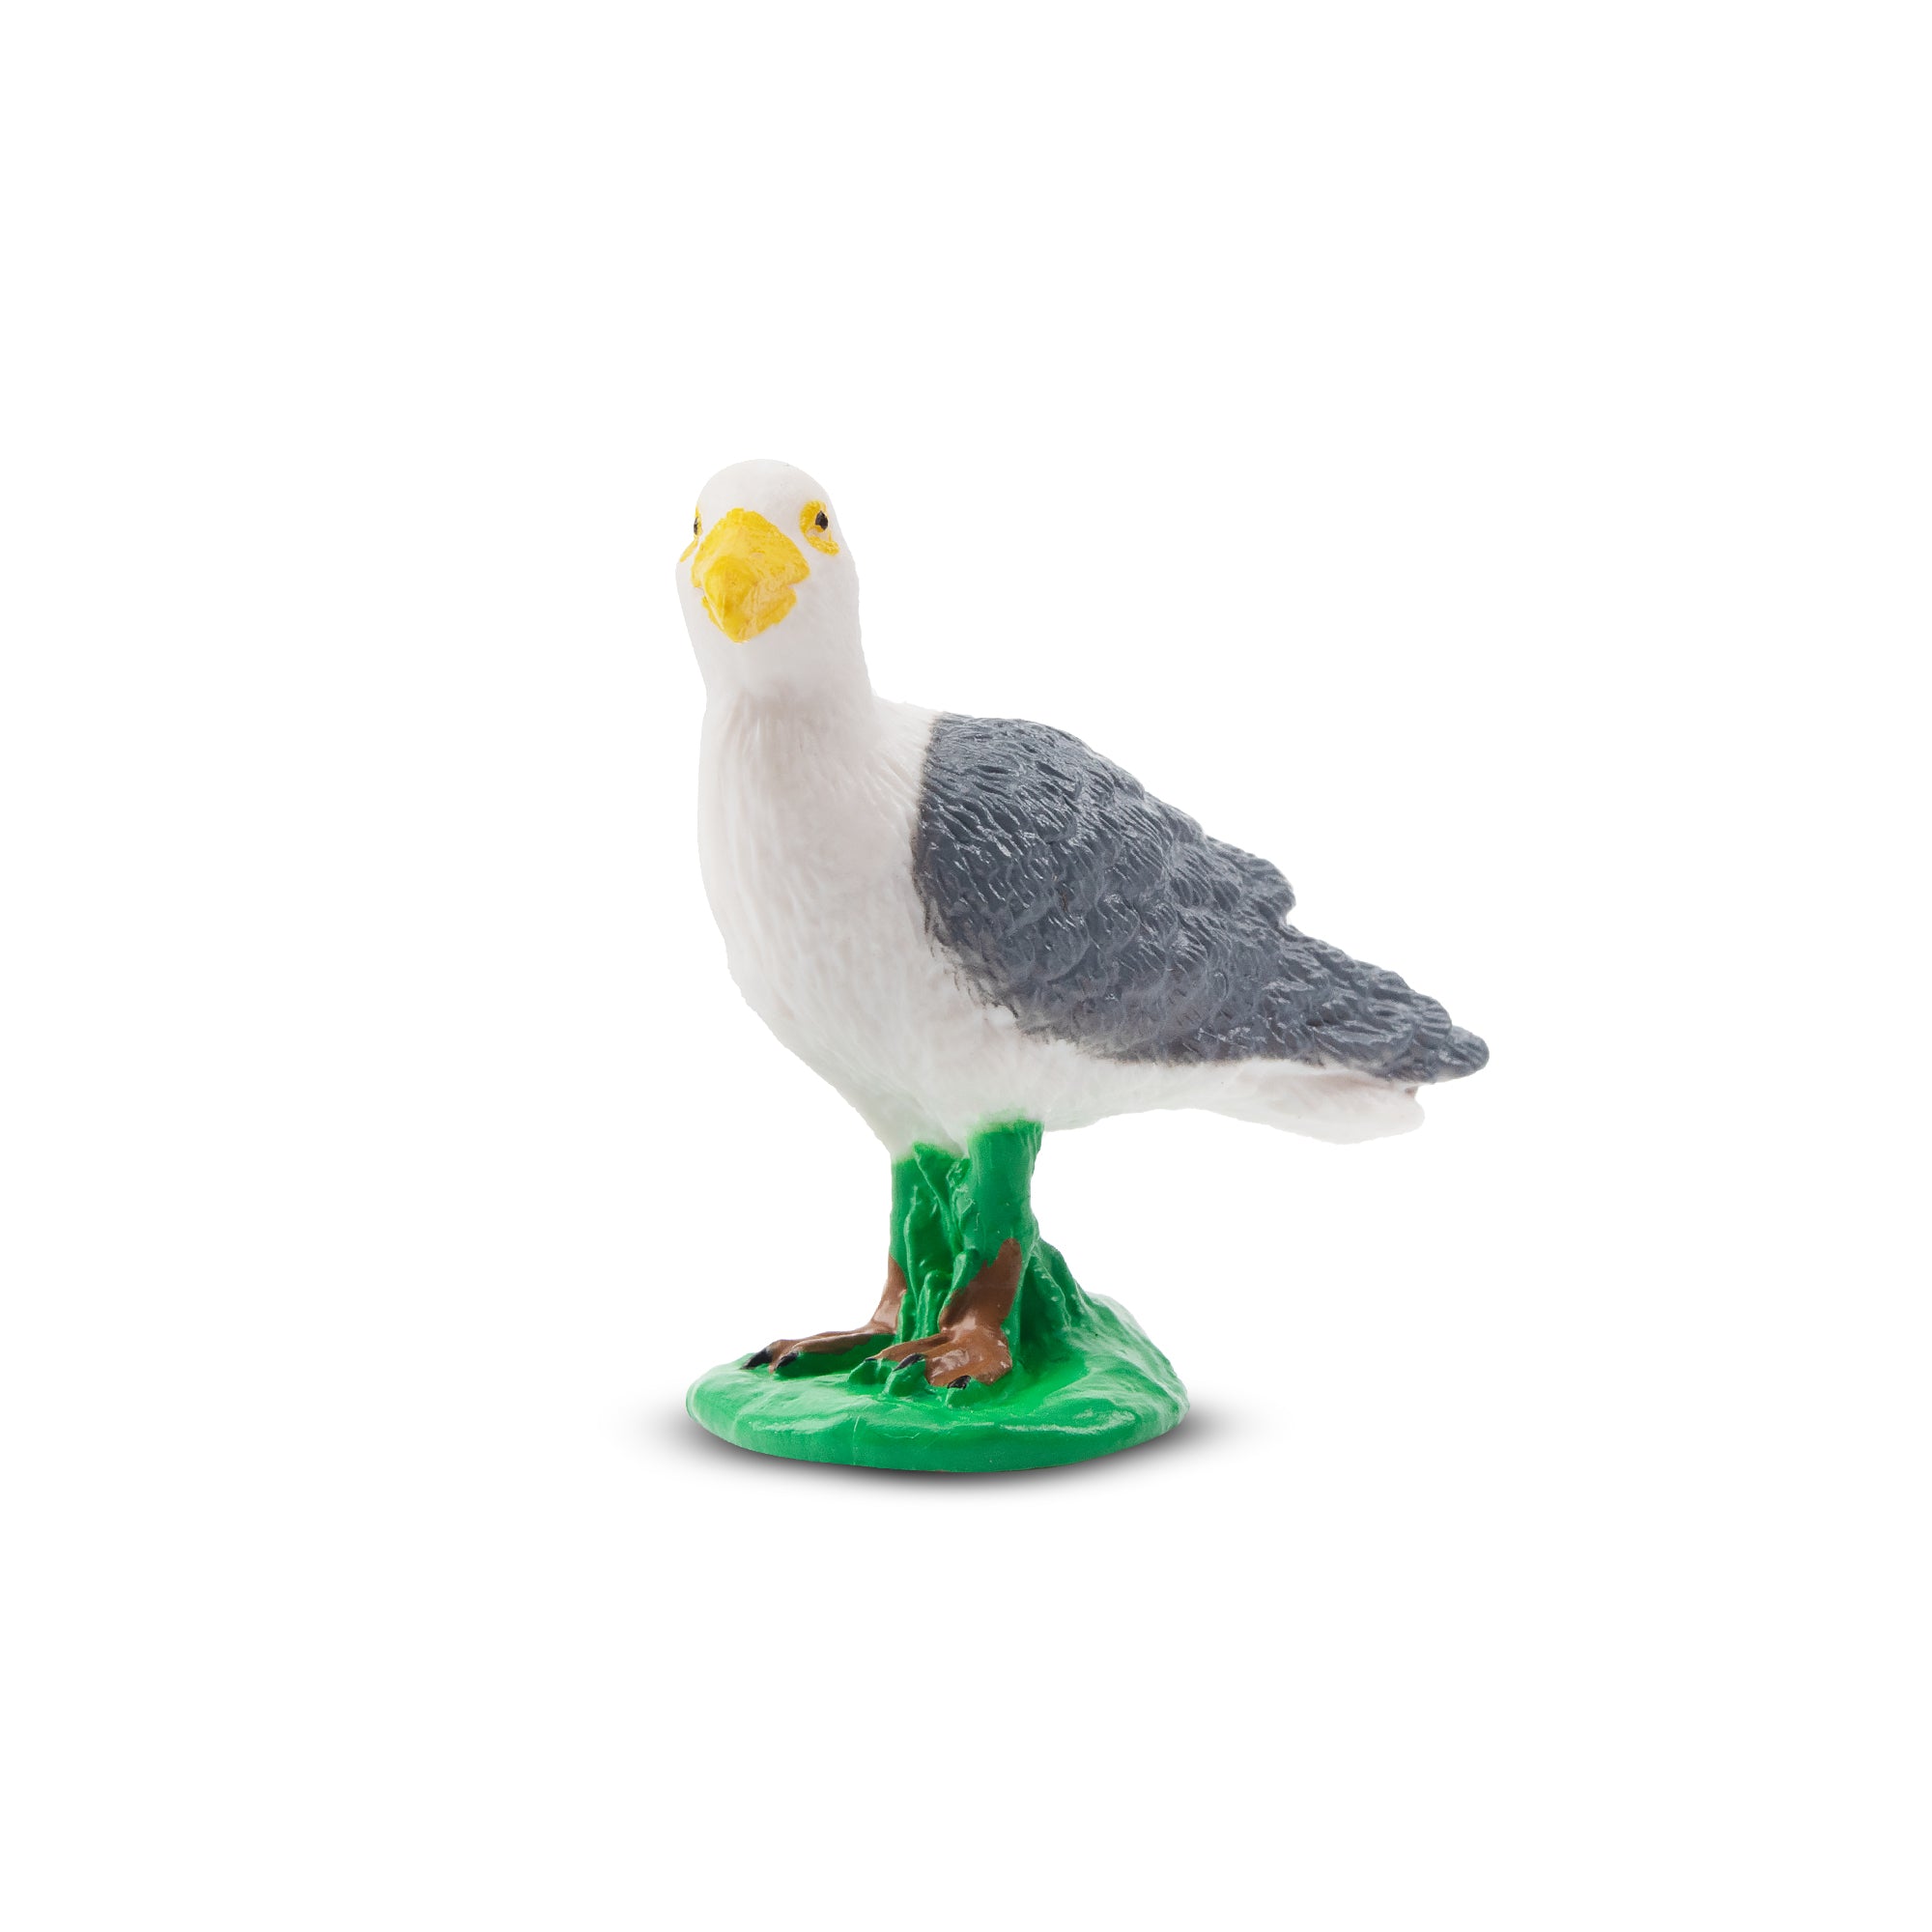 Toymany Glaucous Gull Figurine Toy